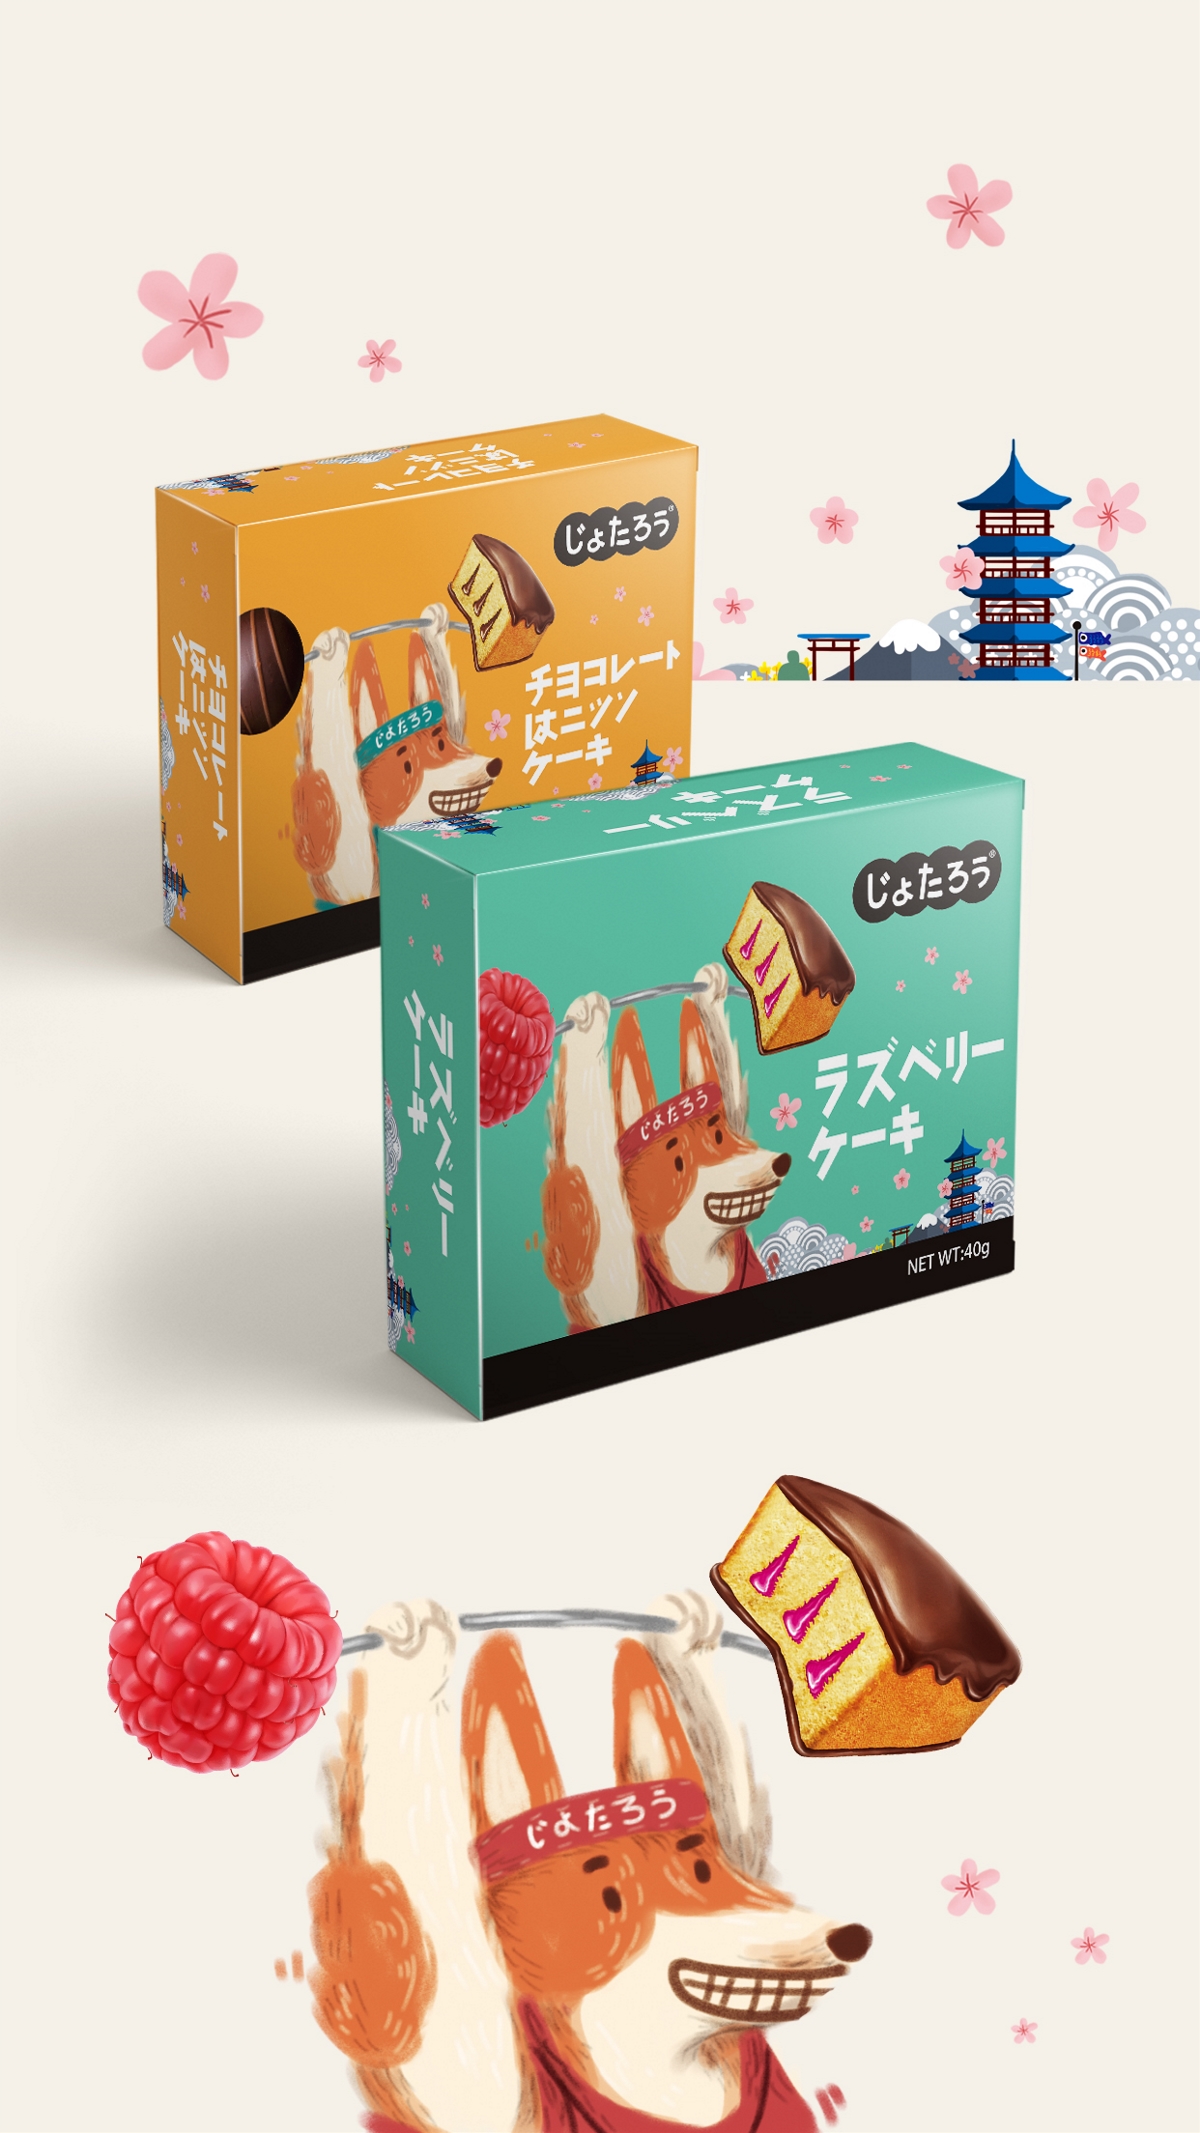 思羿策划【日系】蛋糕包装设计